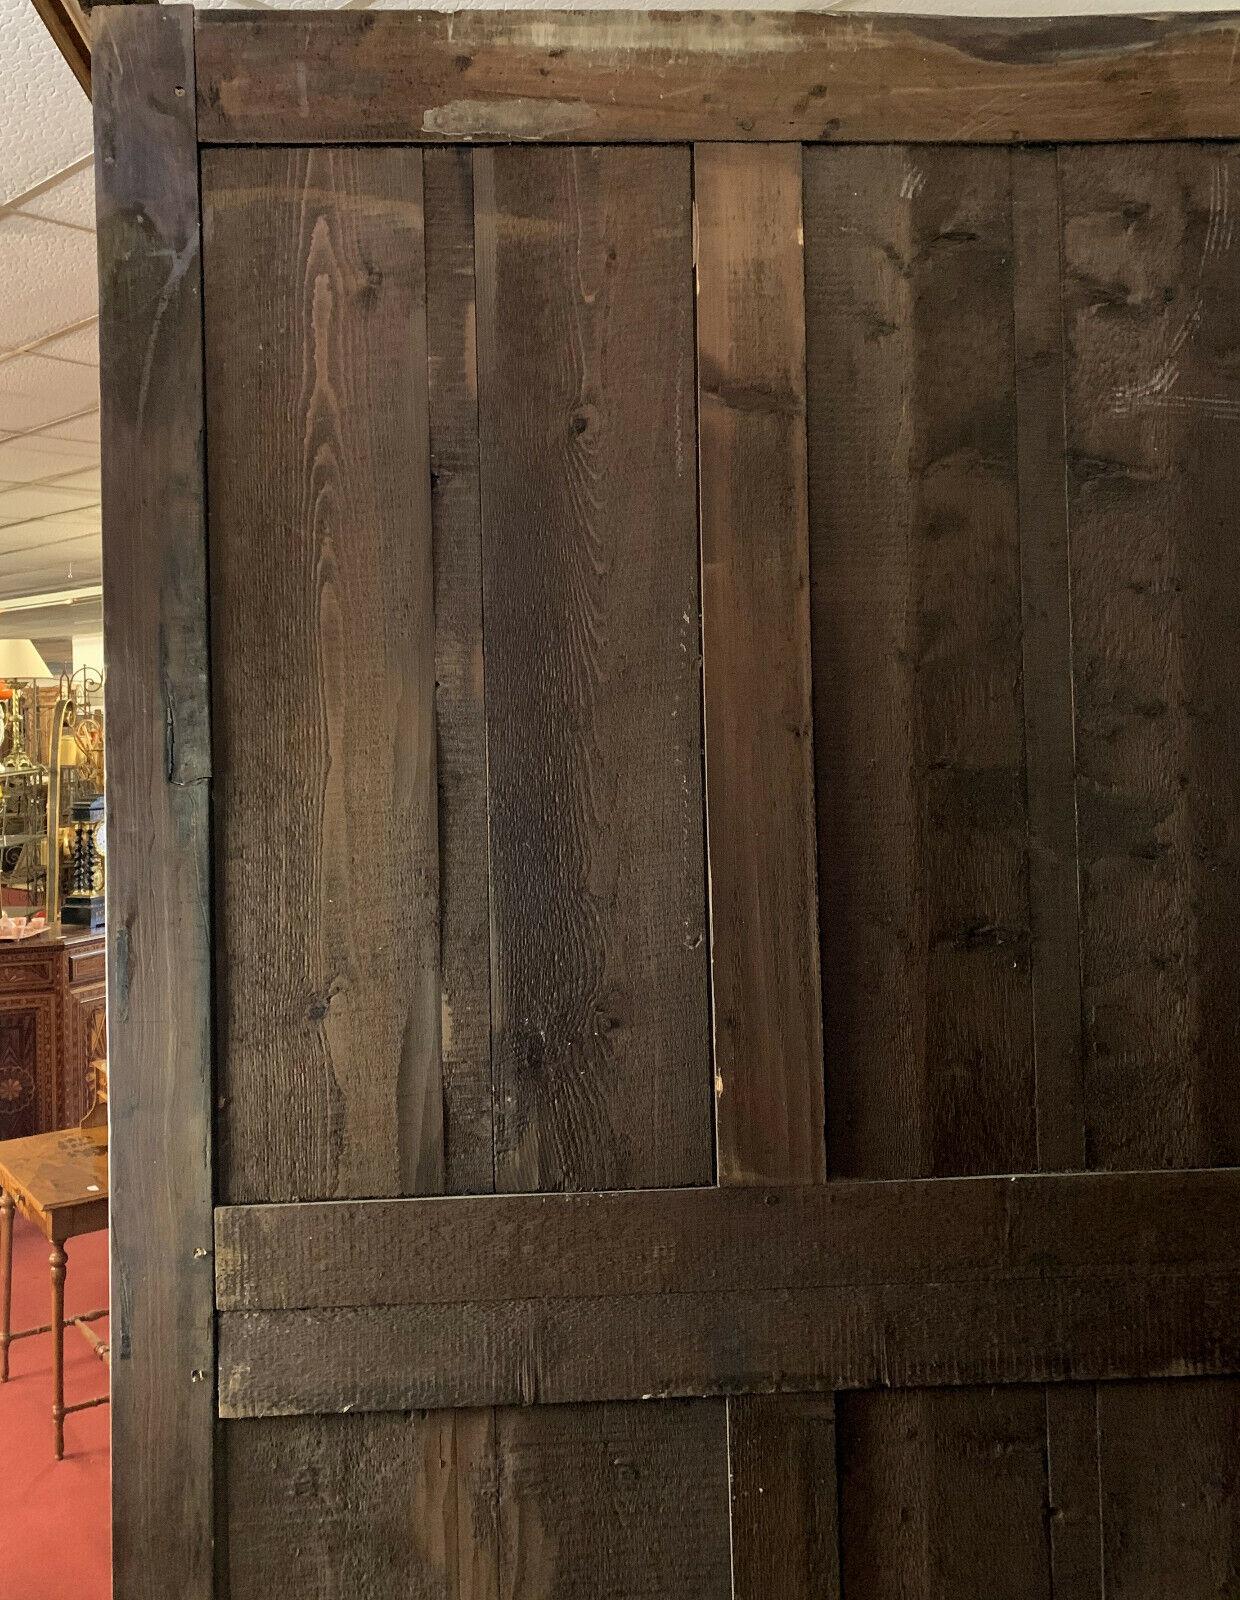 Exceptionnelle armoire d'époque Louis XIII ornée de motifs en pointe de diamant.
La façade avant comporte deux portes et un tiroir.
Les côtés décoratifs rehaussent l'attrait esthétique de cette pièce de qualité muséale.
Conserve ses étagères